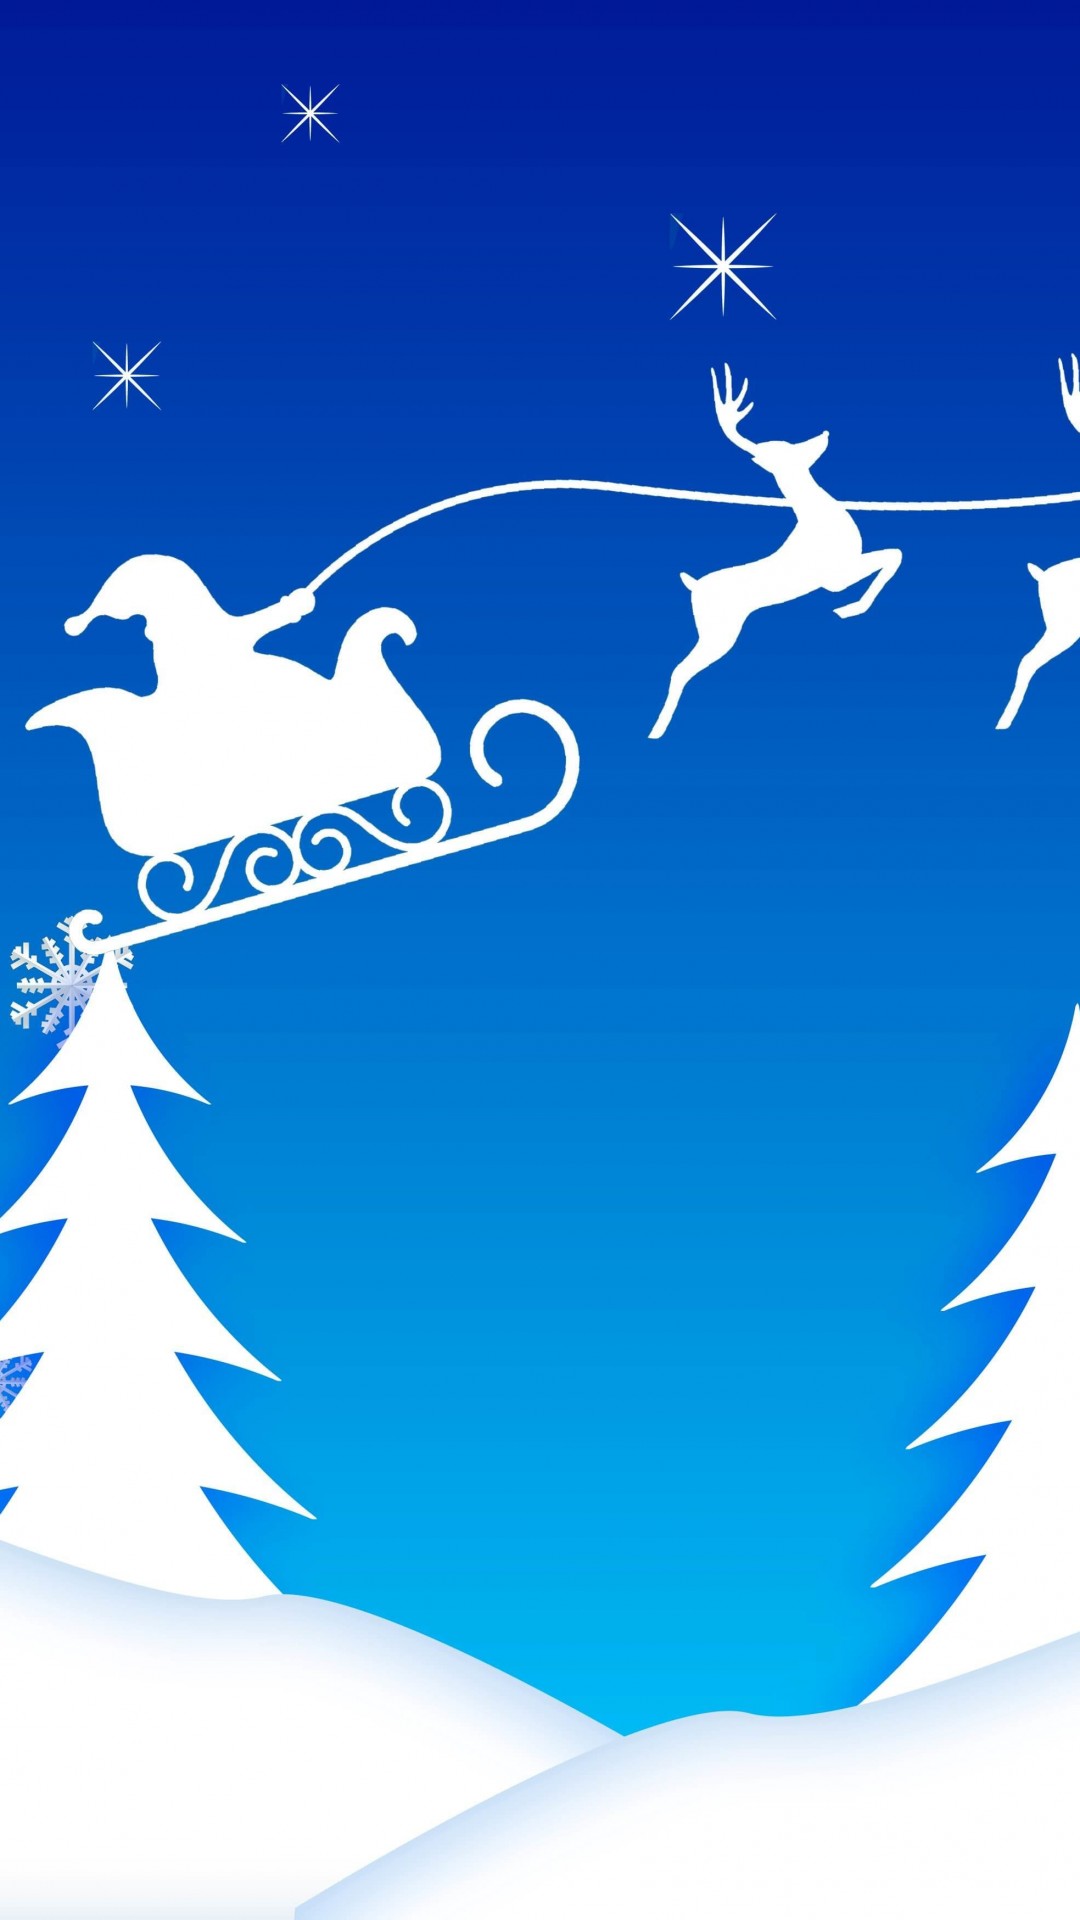 Santa’s Sleigh Illustration Wallpaper for Motorola Moto X